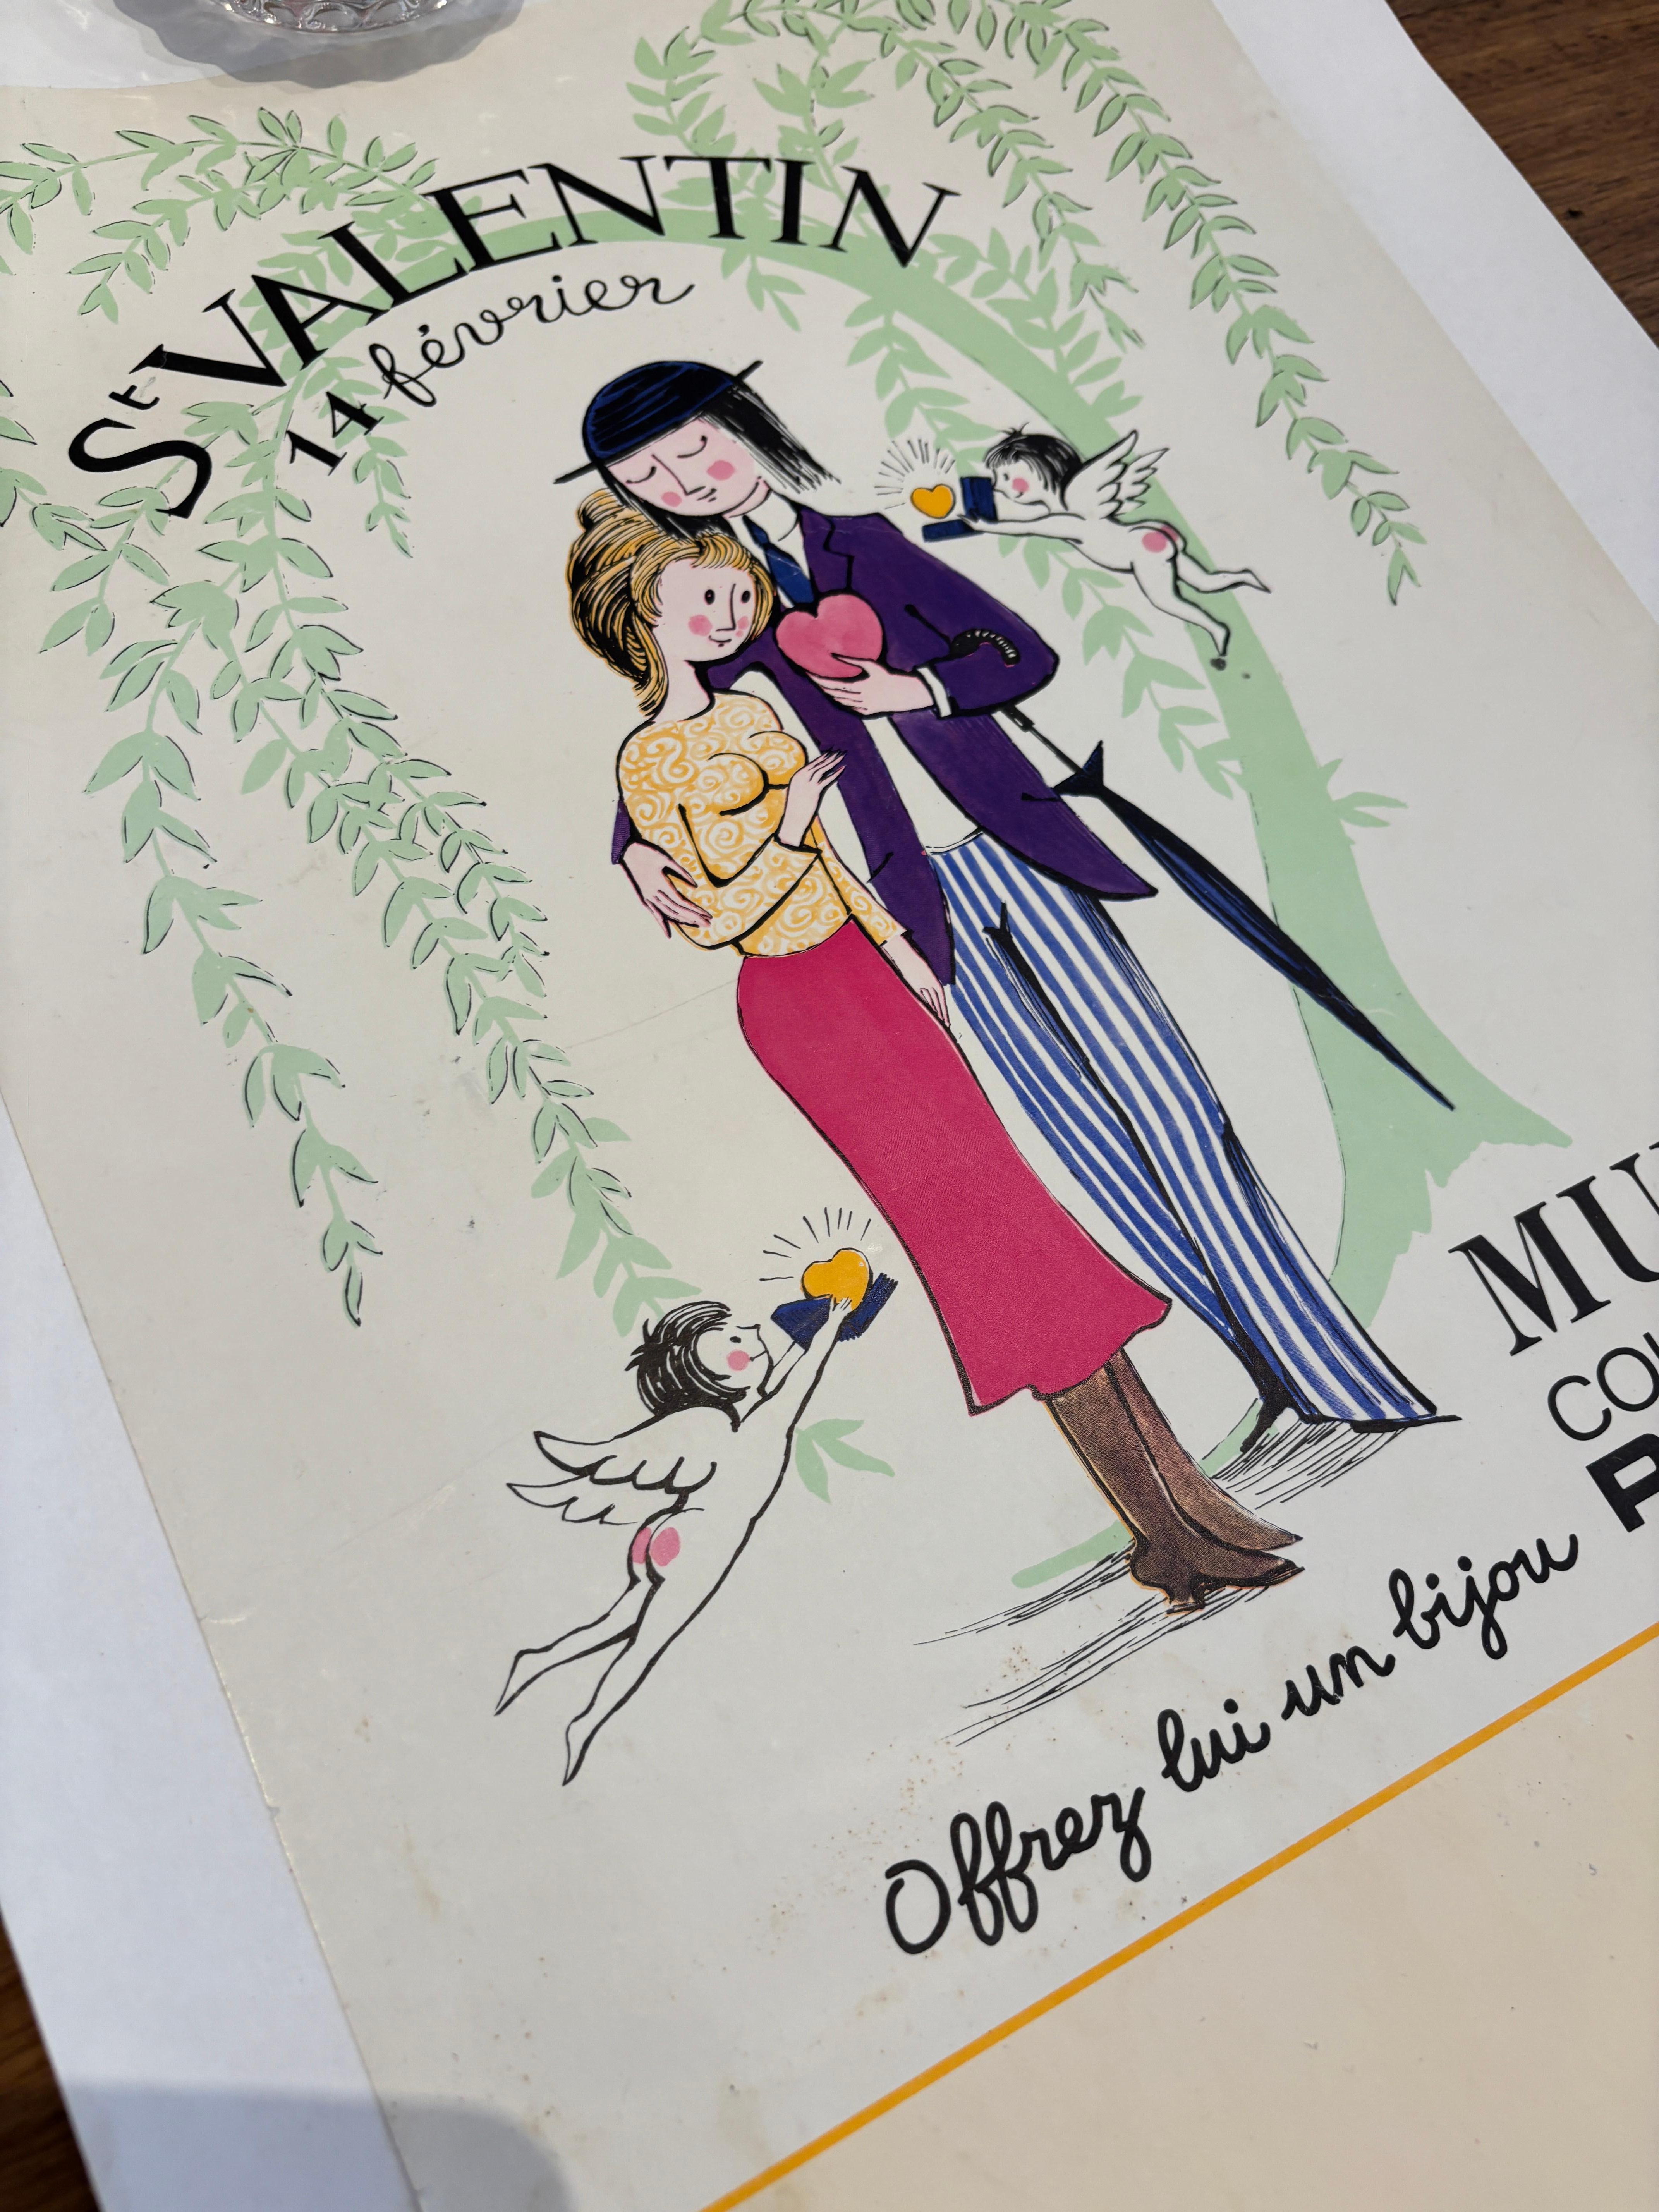 Il s'agit d'une affiche vintage originale du célèbre artiste illustrateur français, Raymond Peynet.

Raymond Peynet (1908-1999) est un artiste français célèbre pour ses illustrations romantiques et sentimentales. Il est surtout connu pour 